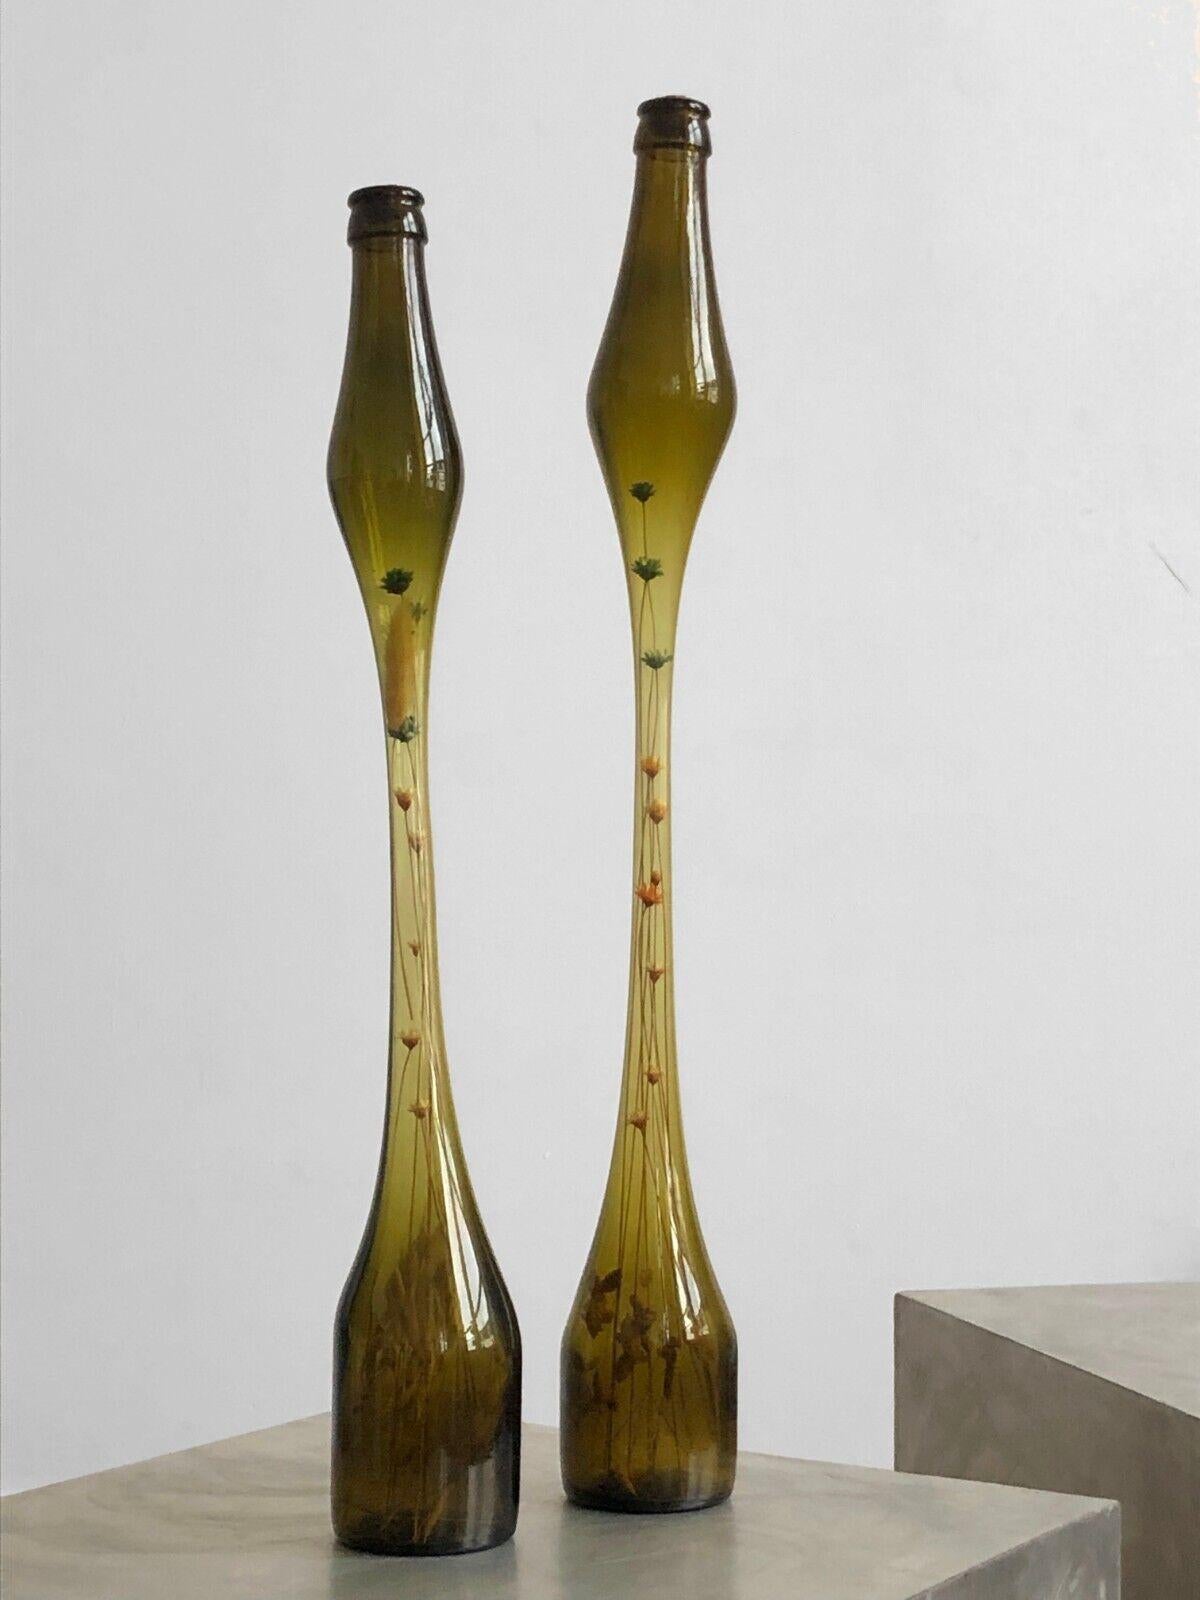 Une paire de superbes vases bouteilles effilés, modernistes, Forme-Libre, avec des corps étirés, sculptés, fondus à chaud, en verre soufflé kaki ambré, comprenant de fines compositions d'herbes et de fleurs séchées, travail d'artiste, à attribuer,